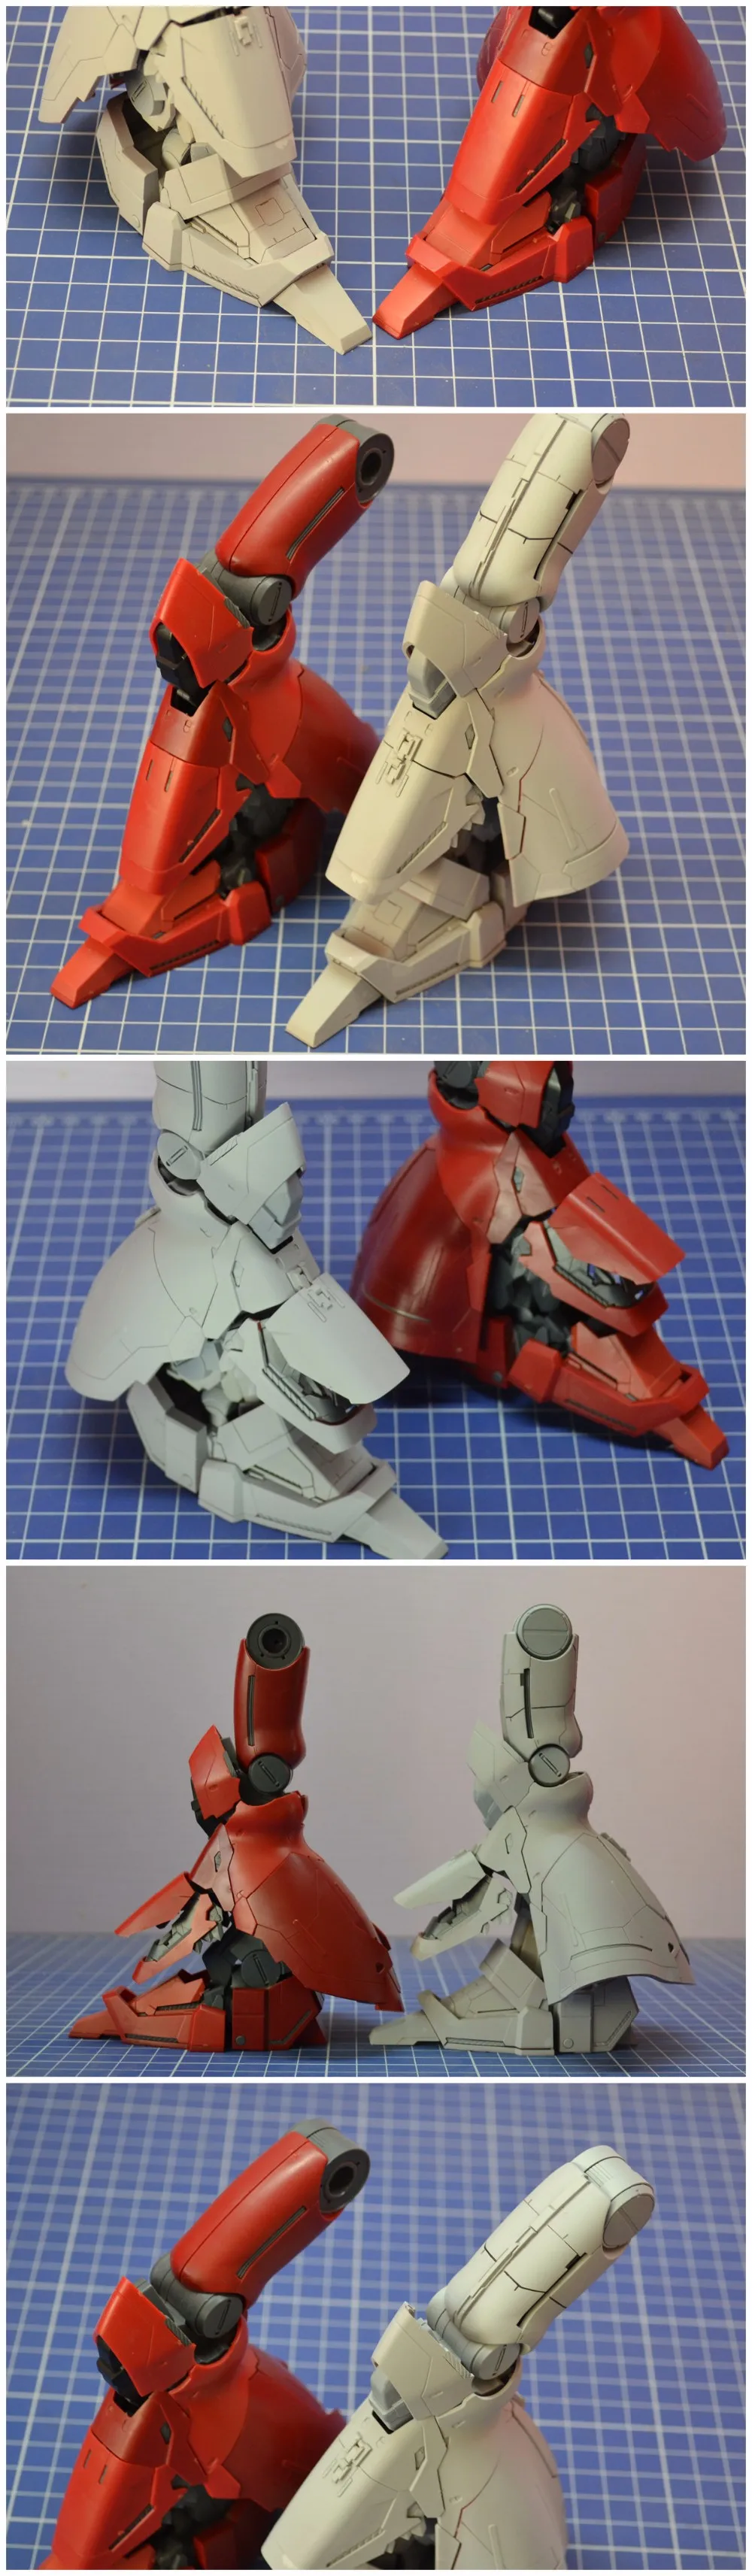 Сторона 3 переоборудование набор переоборудования GK для MG 1/100 MSN-04 Sazabi Ver. Ka Gundam модель мобильного костюма Детские игрушки